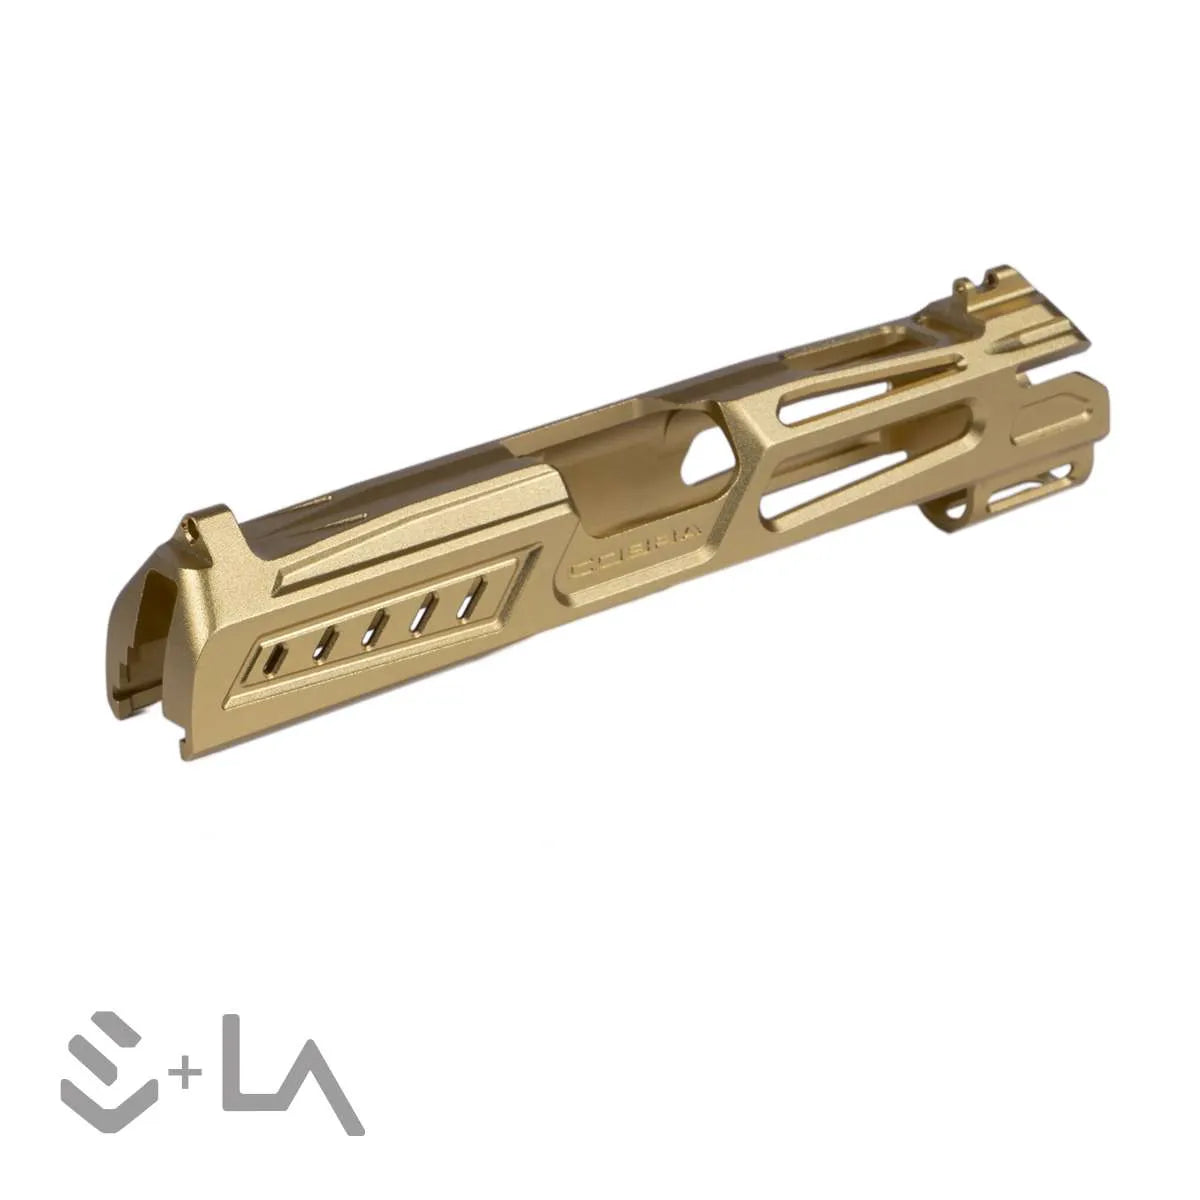 LA Capa Customs x SpeedQB 4.3 “COBRA” Aluminum Slide - Gold